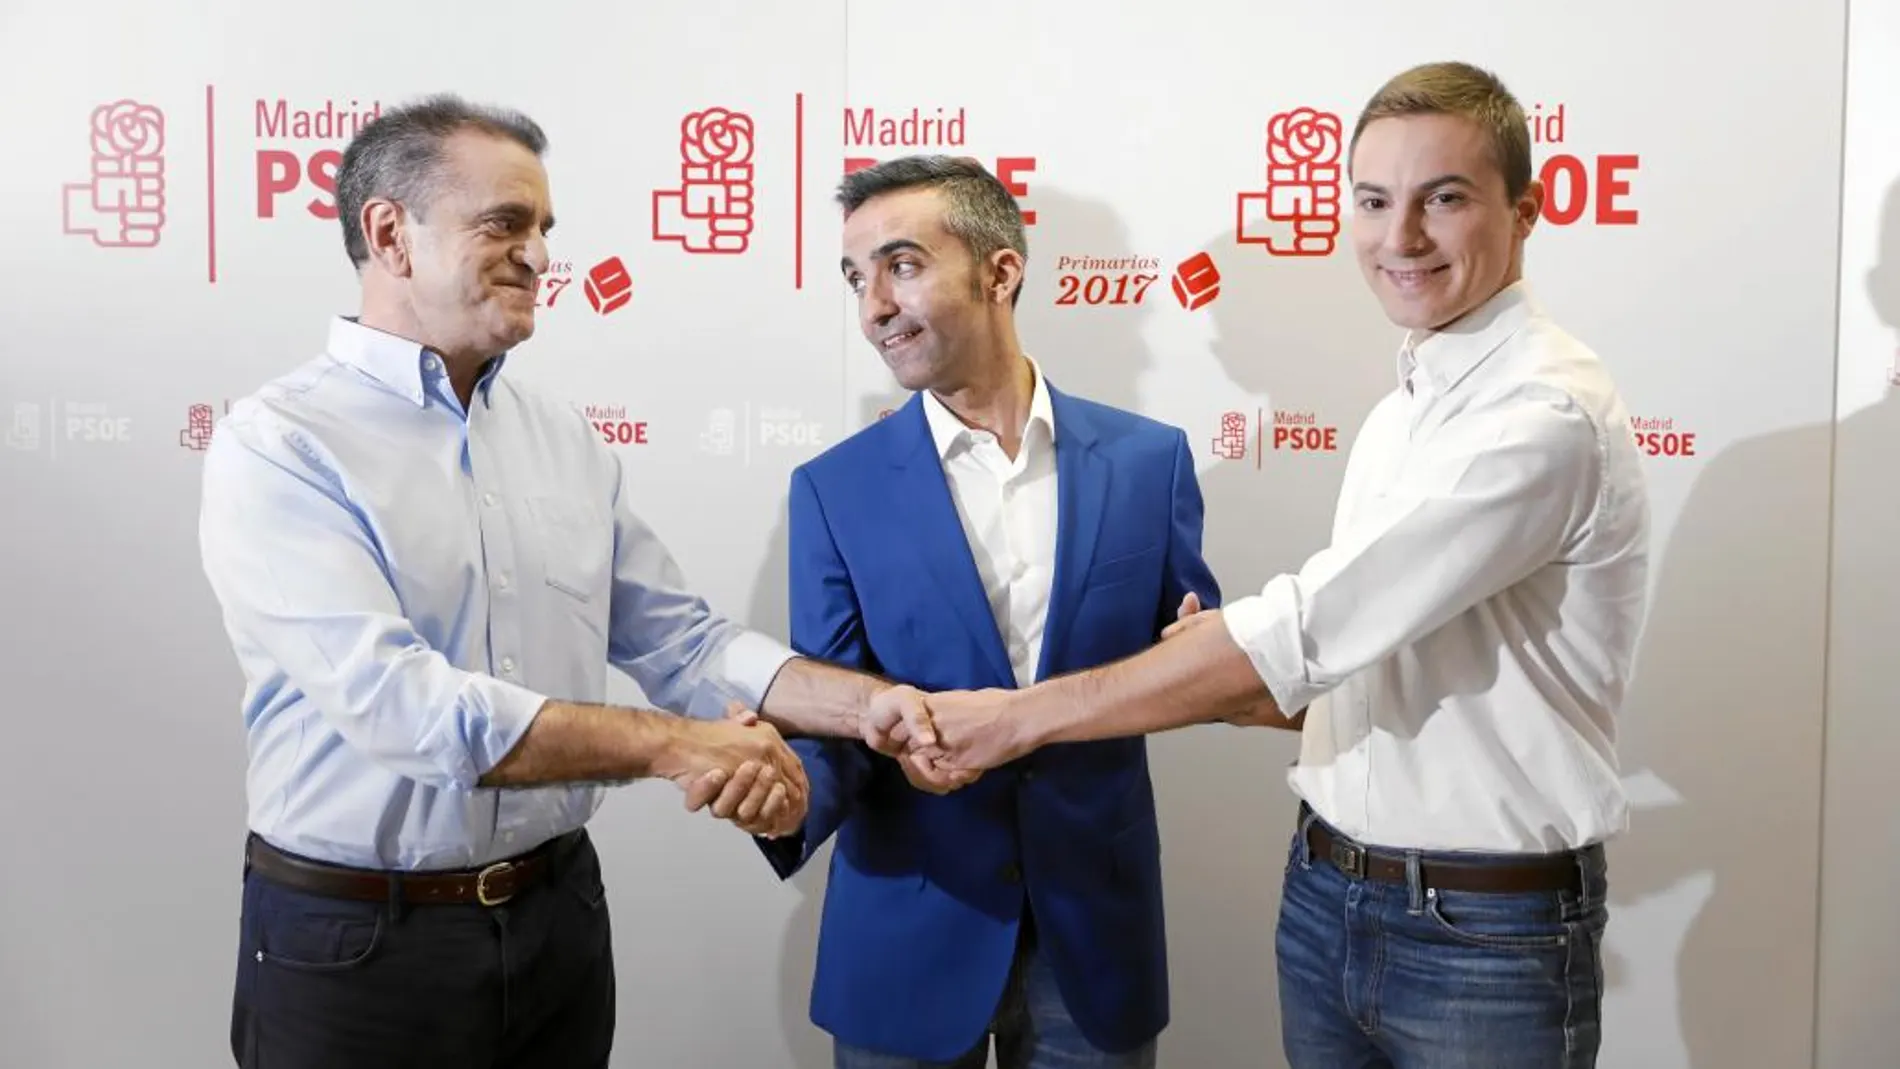 Franco, González Jabonero y Lobaro, los tres candidatos del PSOE-M, debatieron en la sede del partido